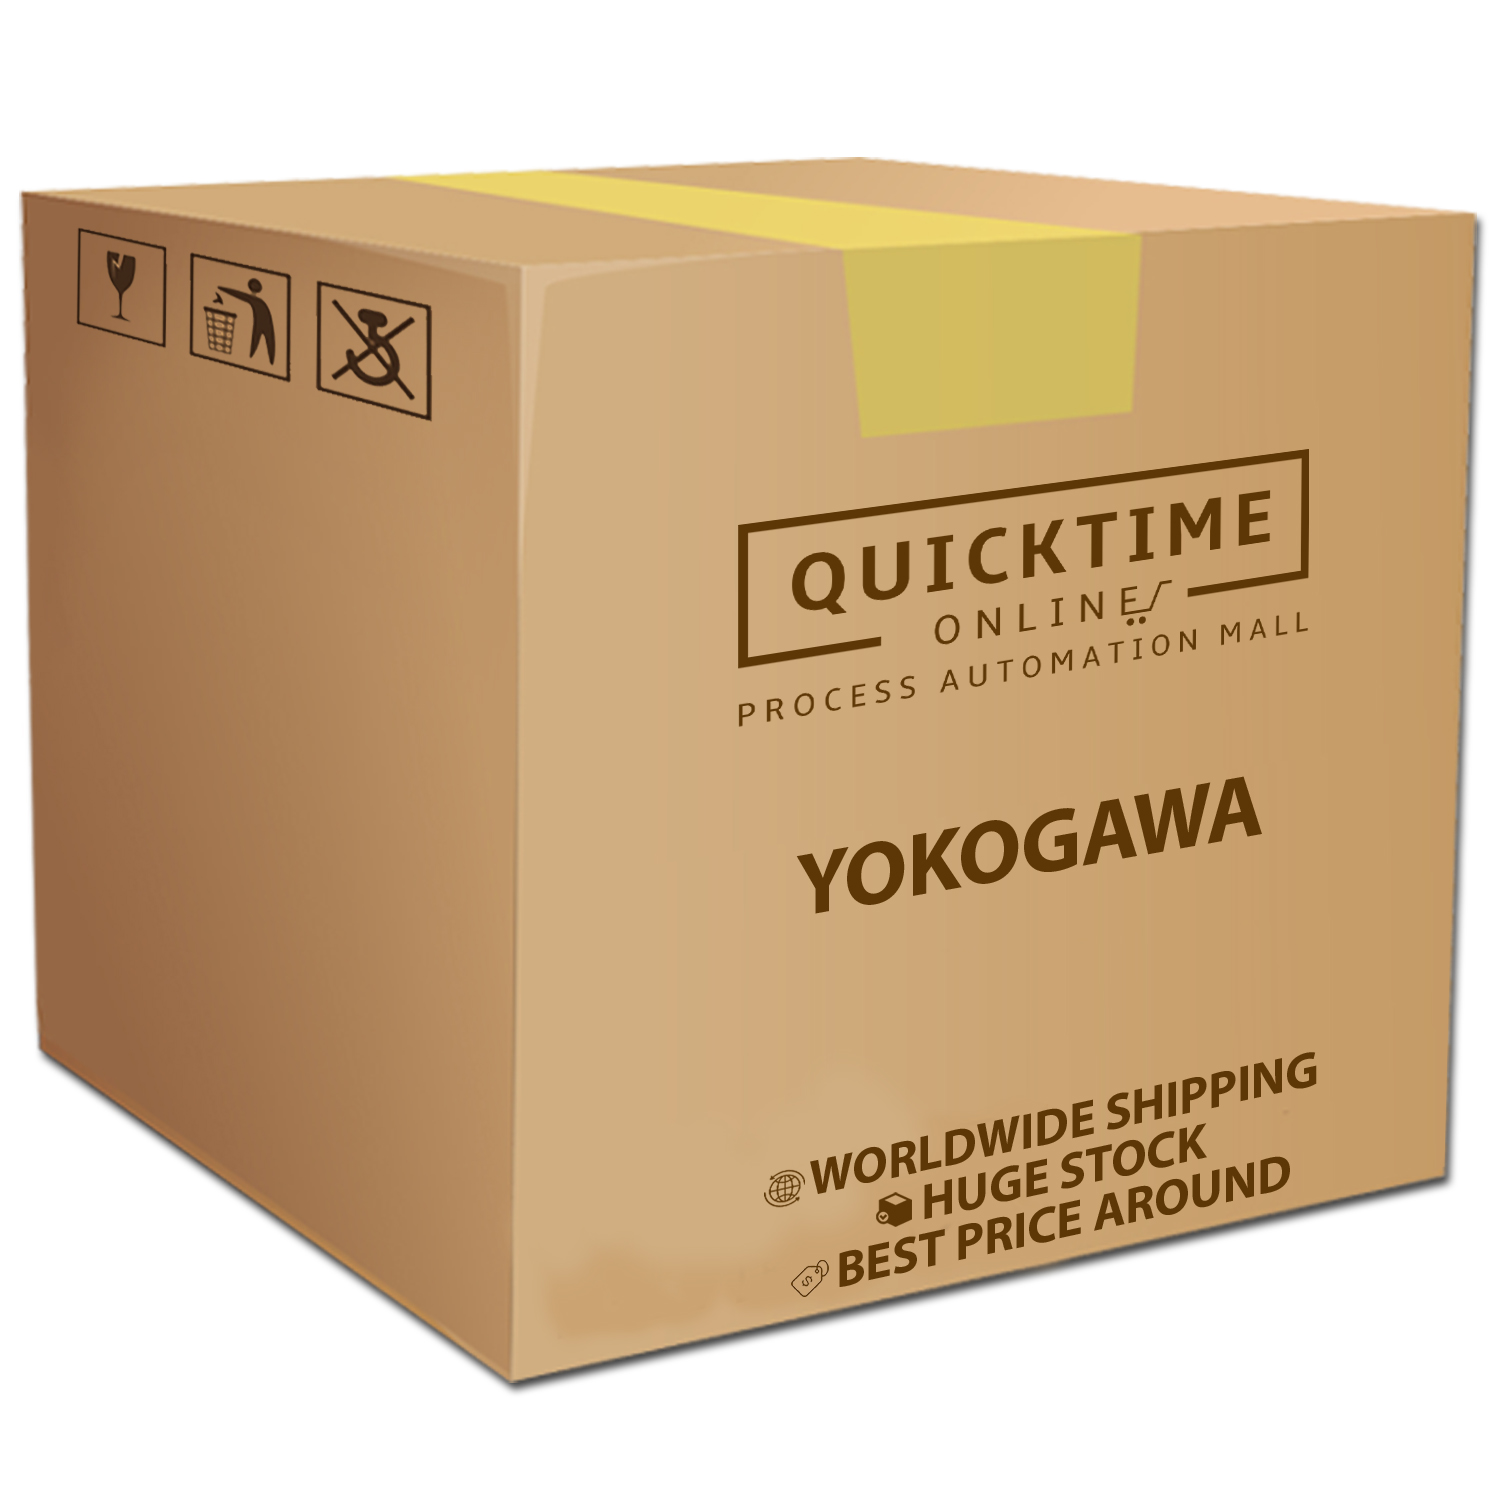 GA10-01/CG/MT/RP New Yokogawa Data Logging Software